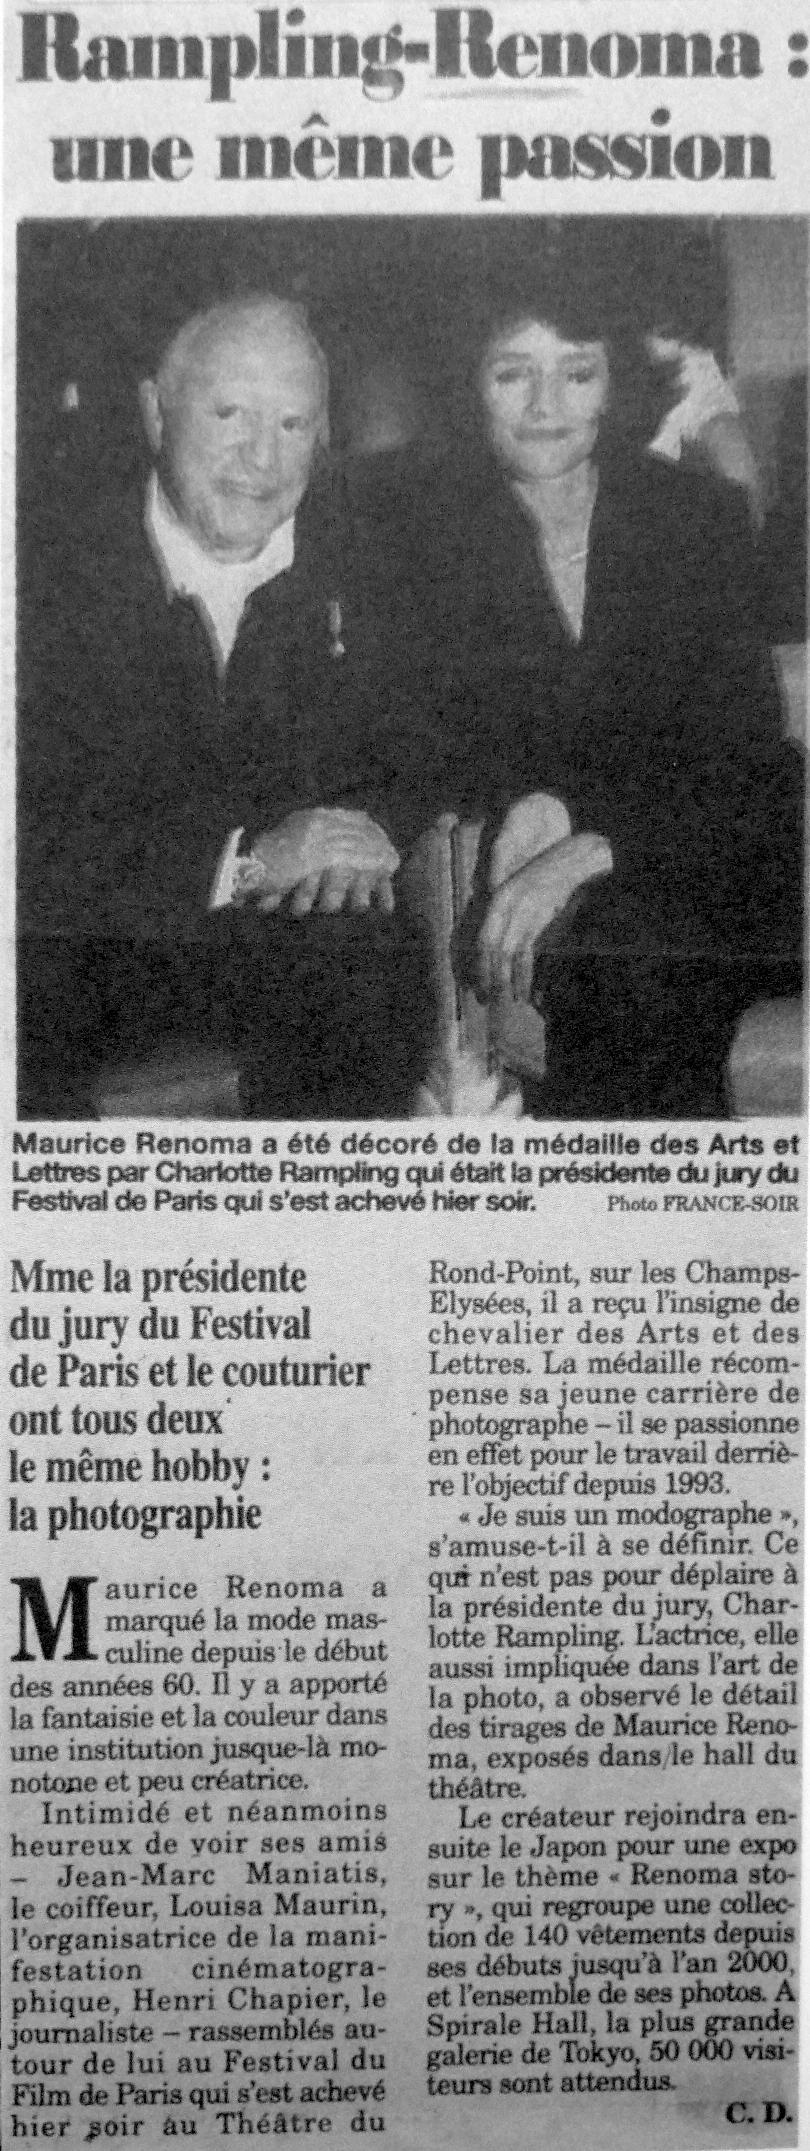 عکس مائوریس رنوما و وزیر فرانسه در روزنامه